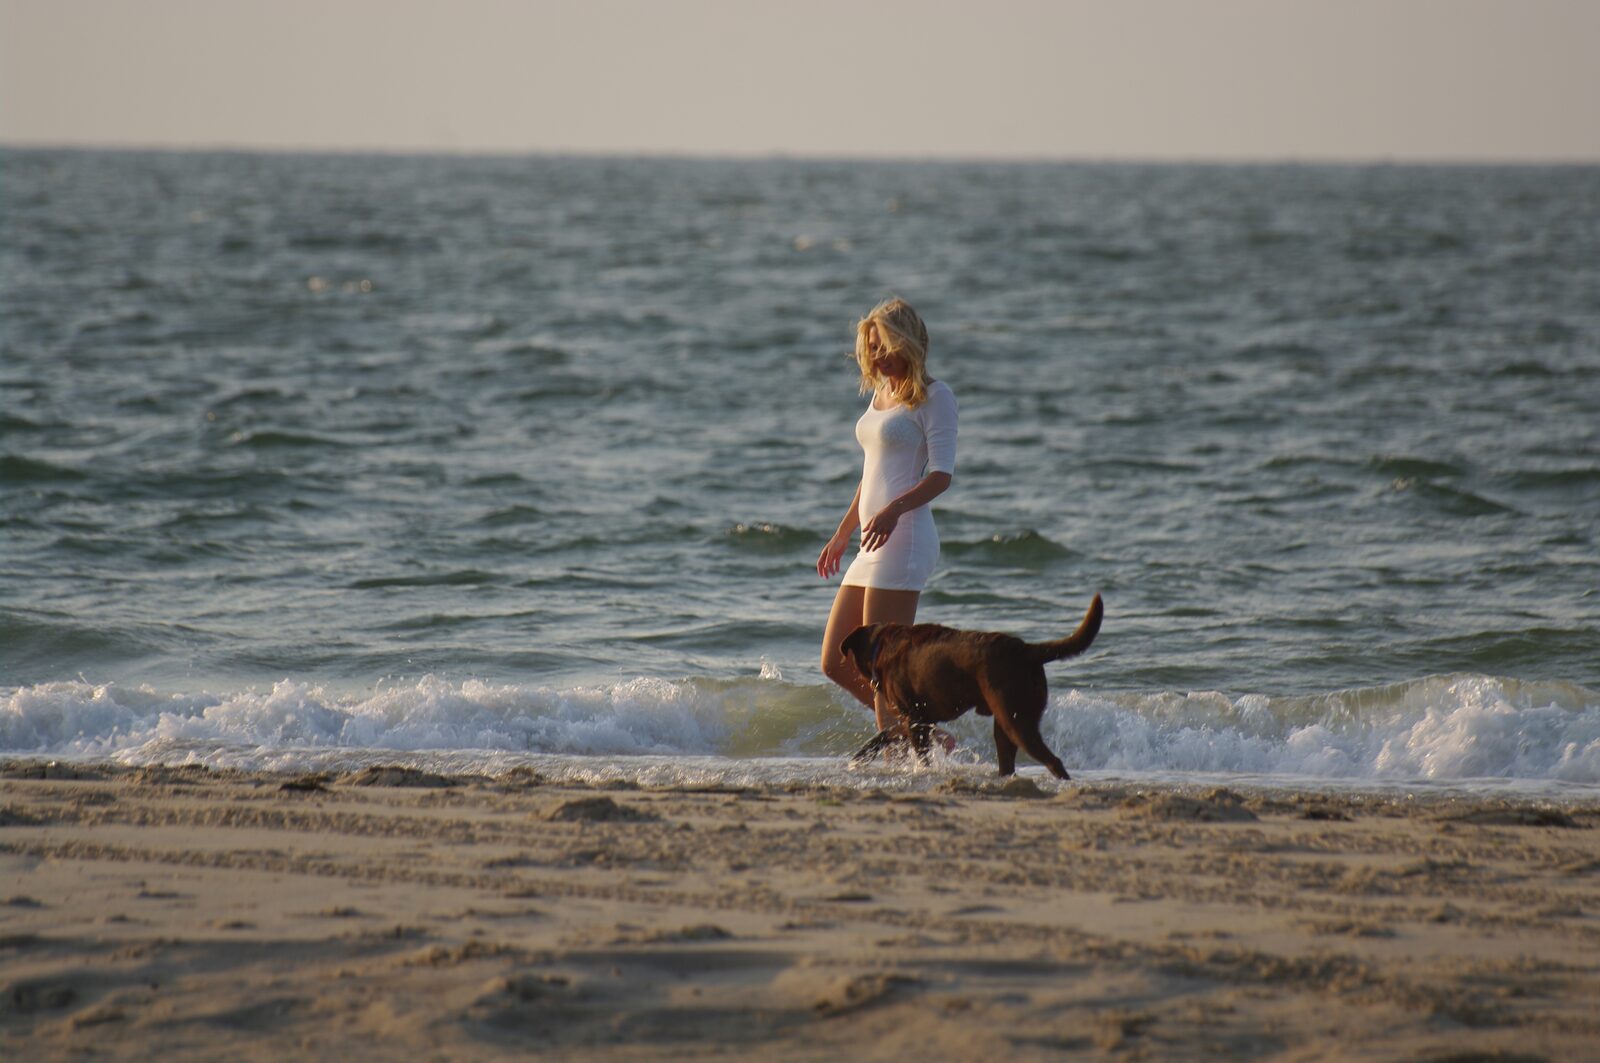 Nordsee Urlaub mit Hund